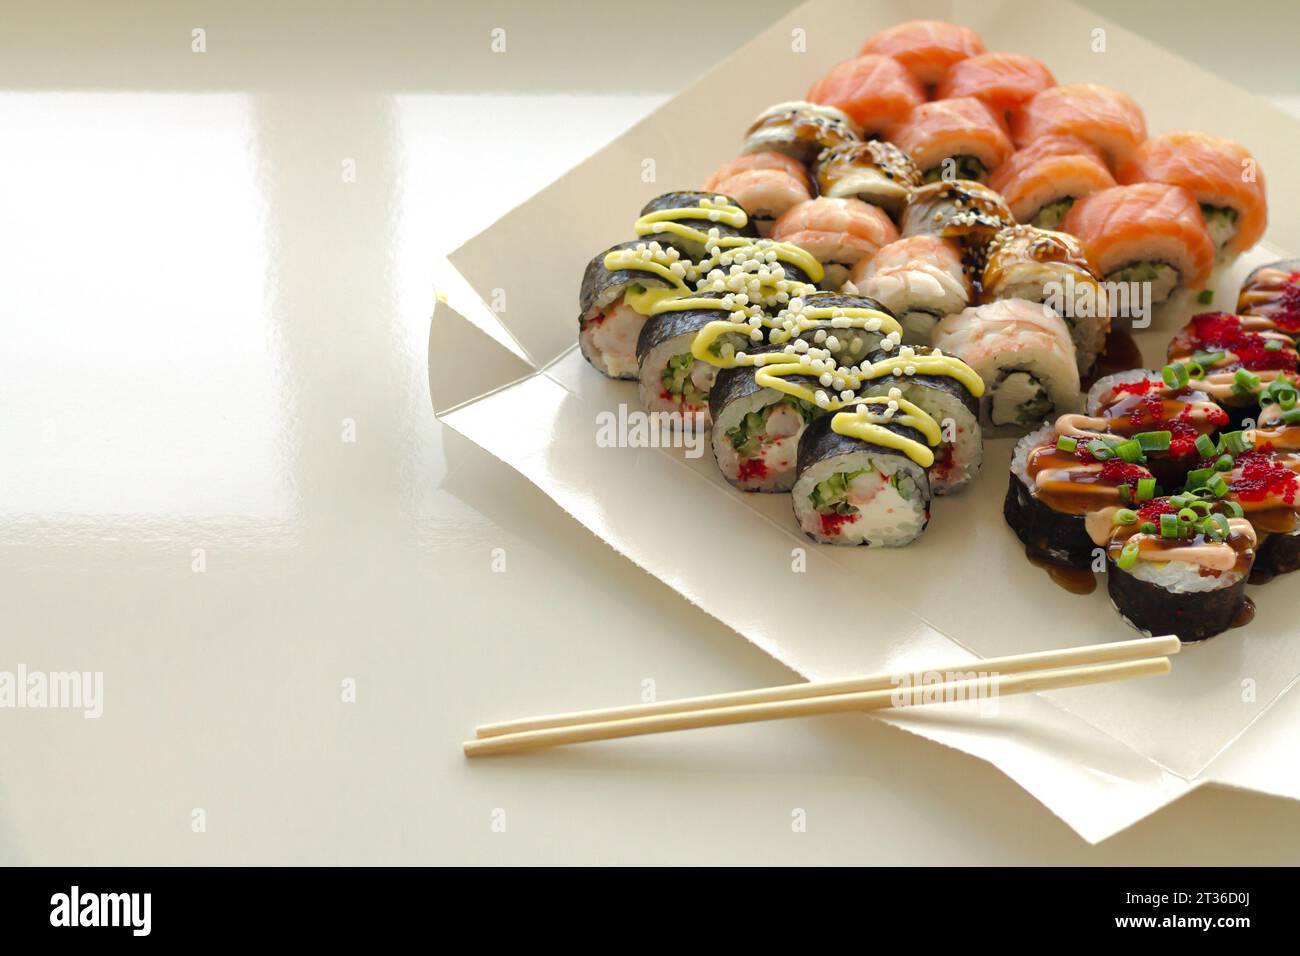 Rouleaux de sushi savoureux dans une boîte de papier jetable sur une table blanche. Service de livraison Japan Food dans le concept de conteneur écologique Banque D'Images